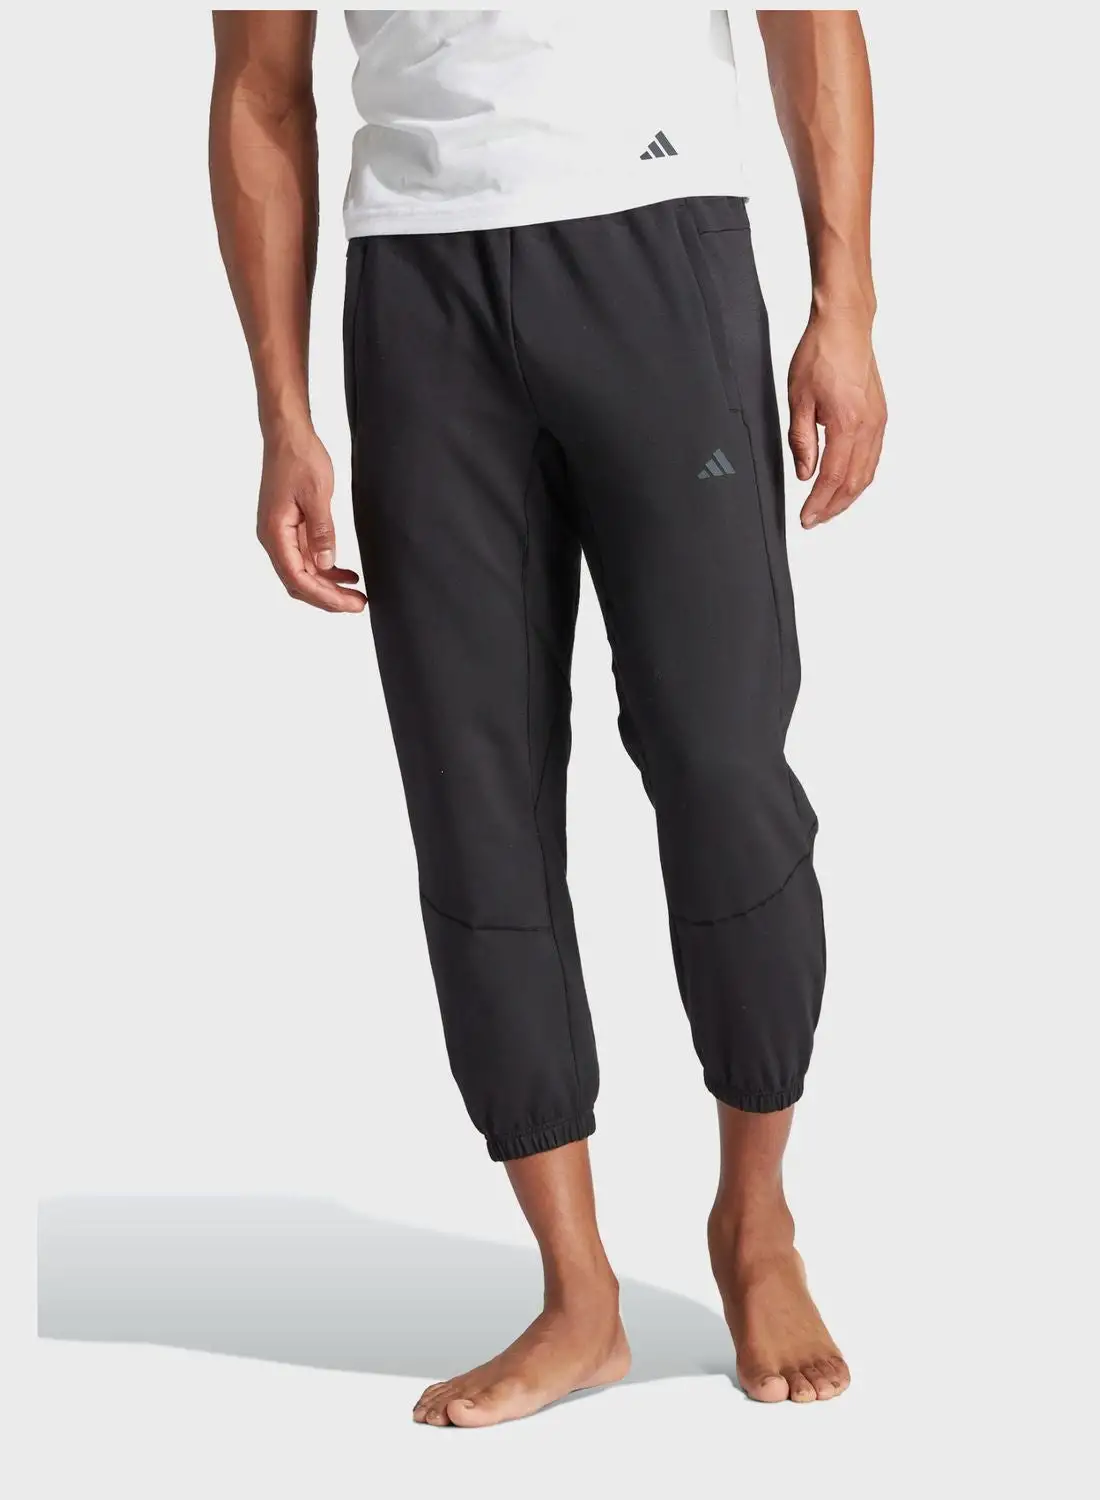 Adidas 7/8 Designed For Training Yoga Sweatpants